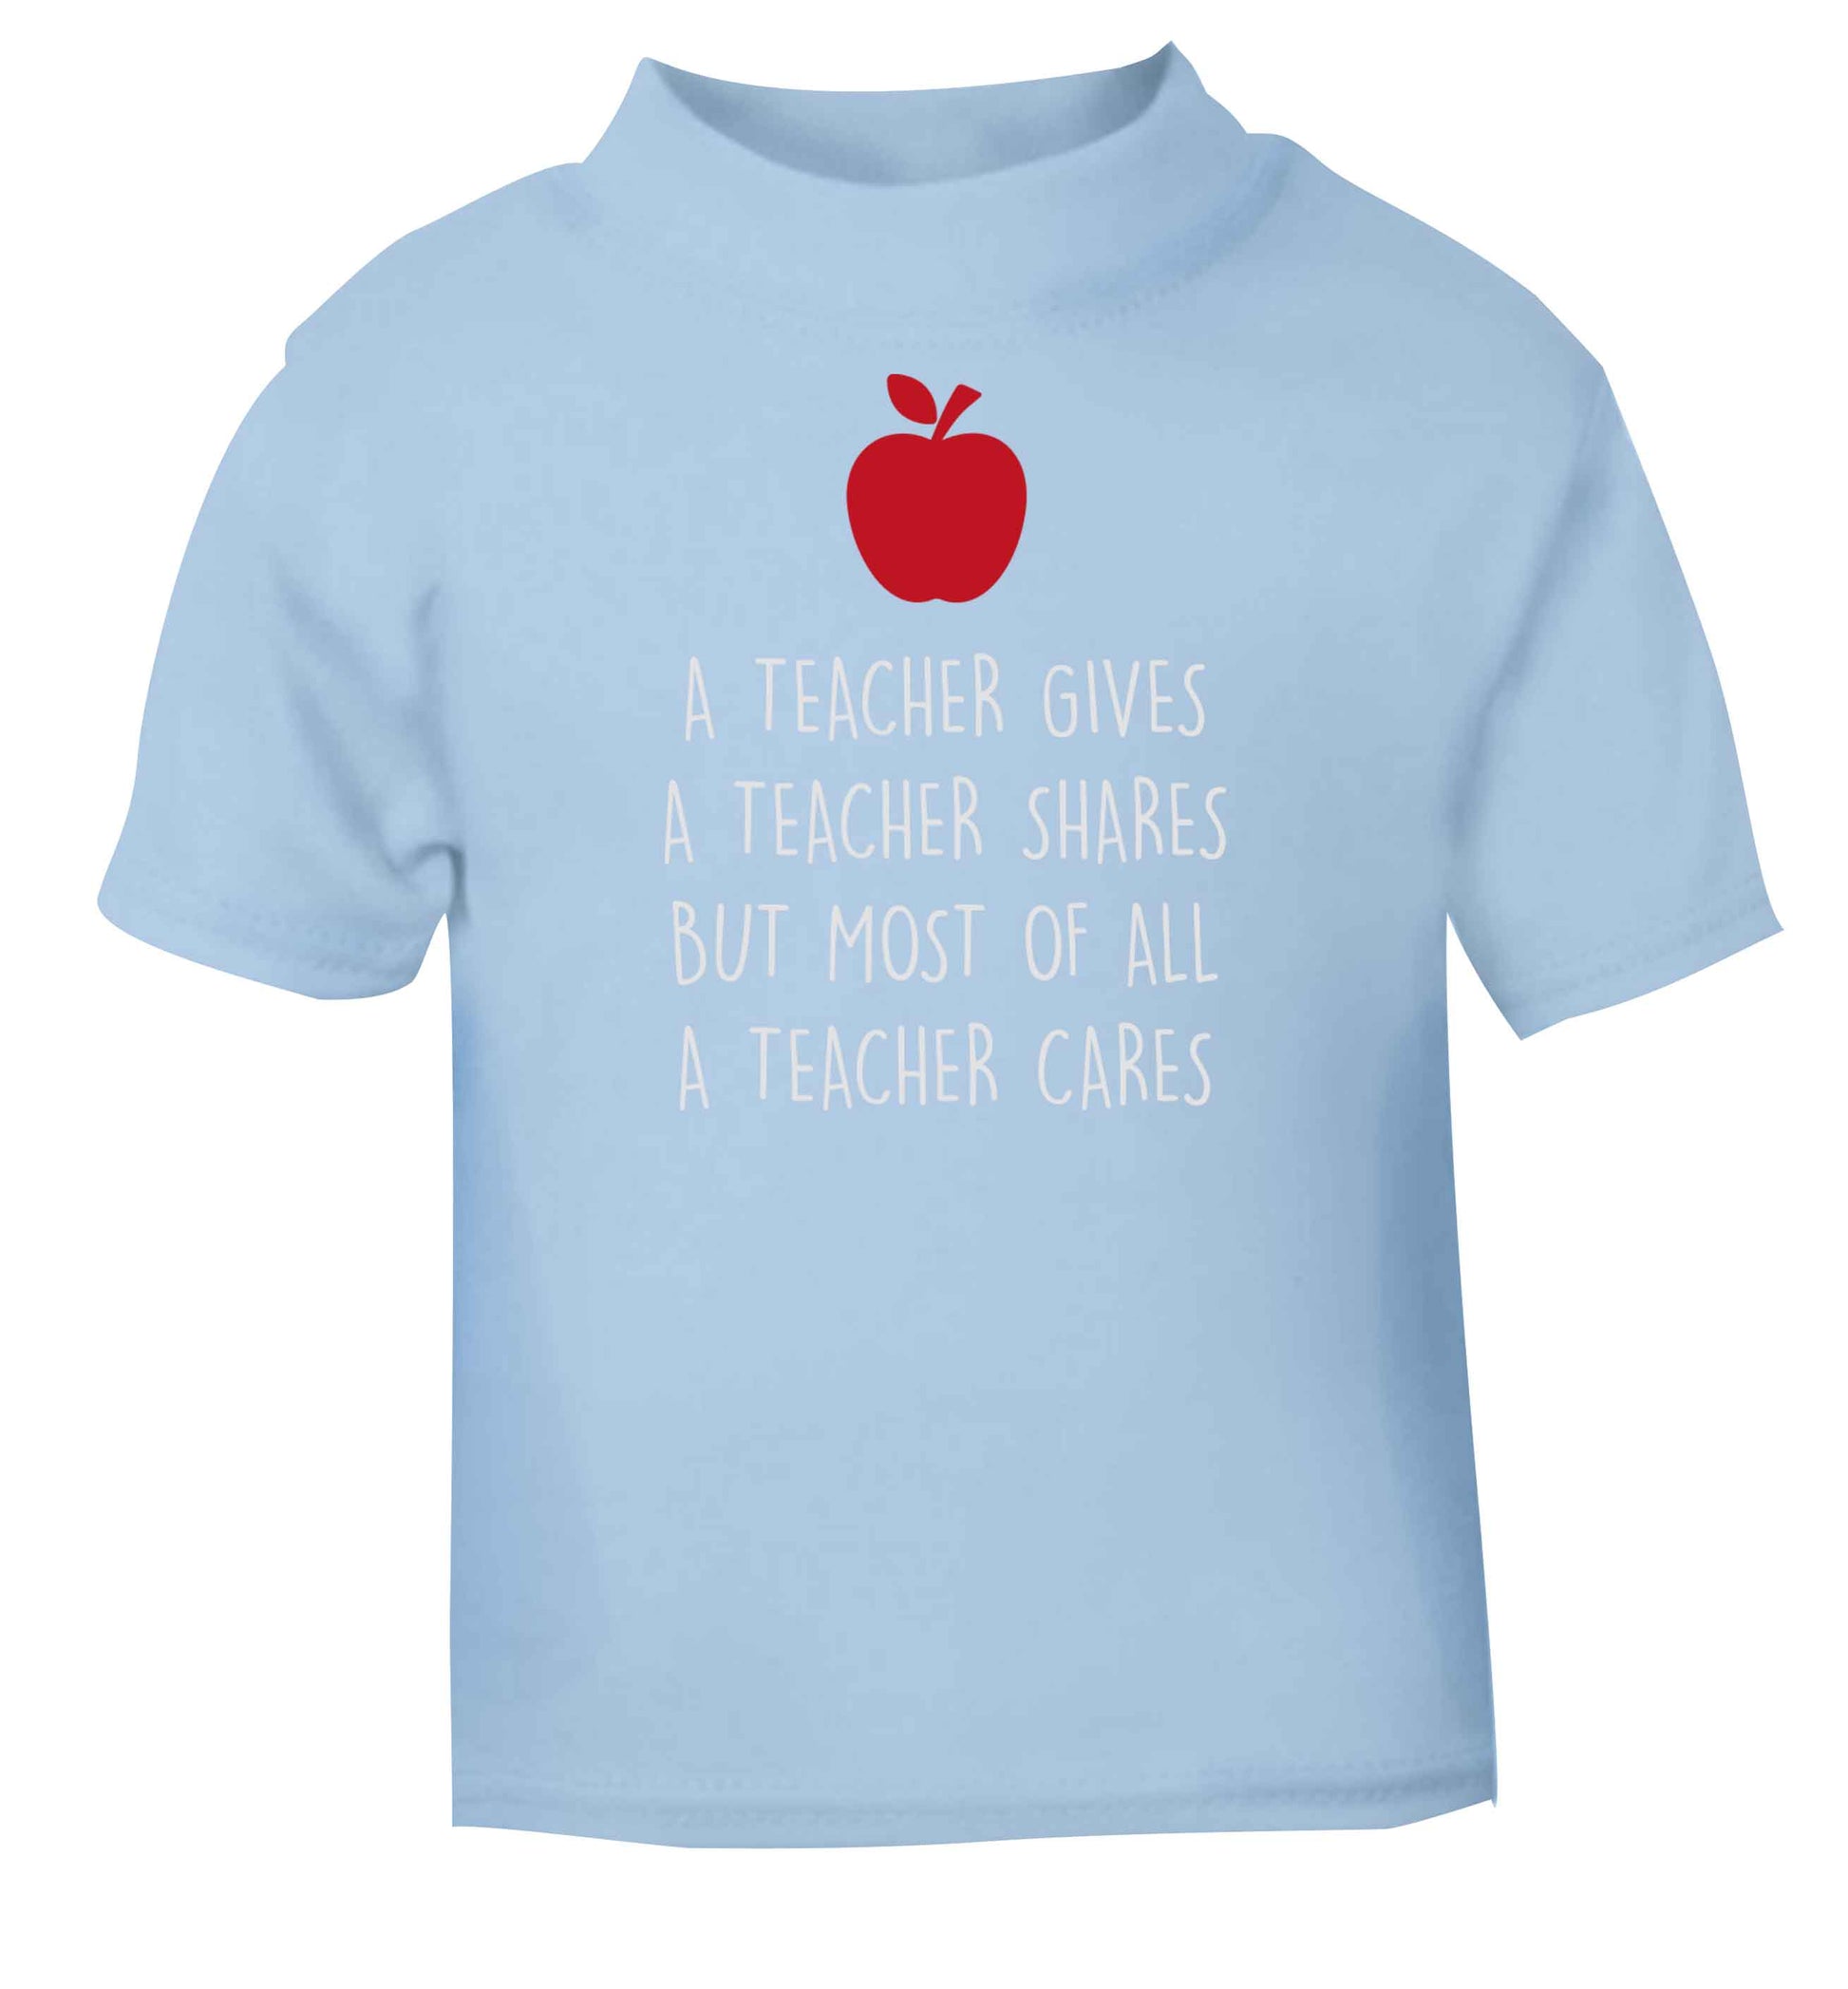 A teacher gives a teacher shares but most of all a teacher cares light blue baby toddler Tshirt 2 Years